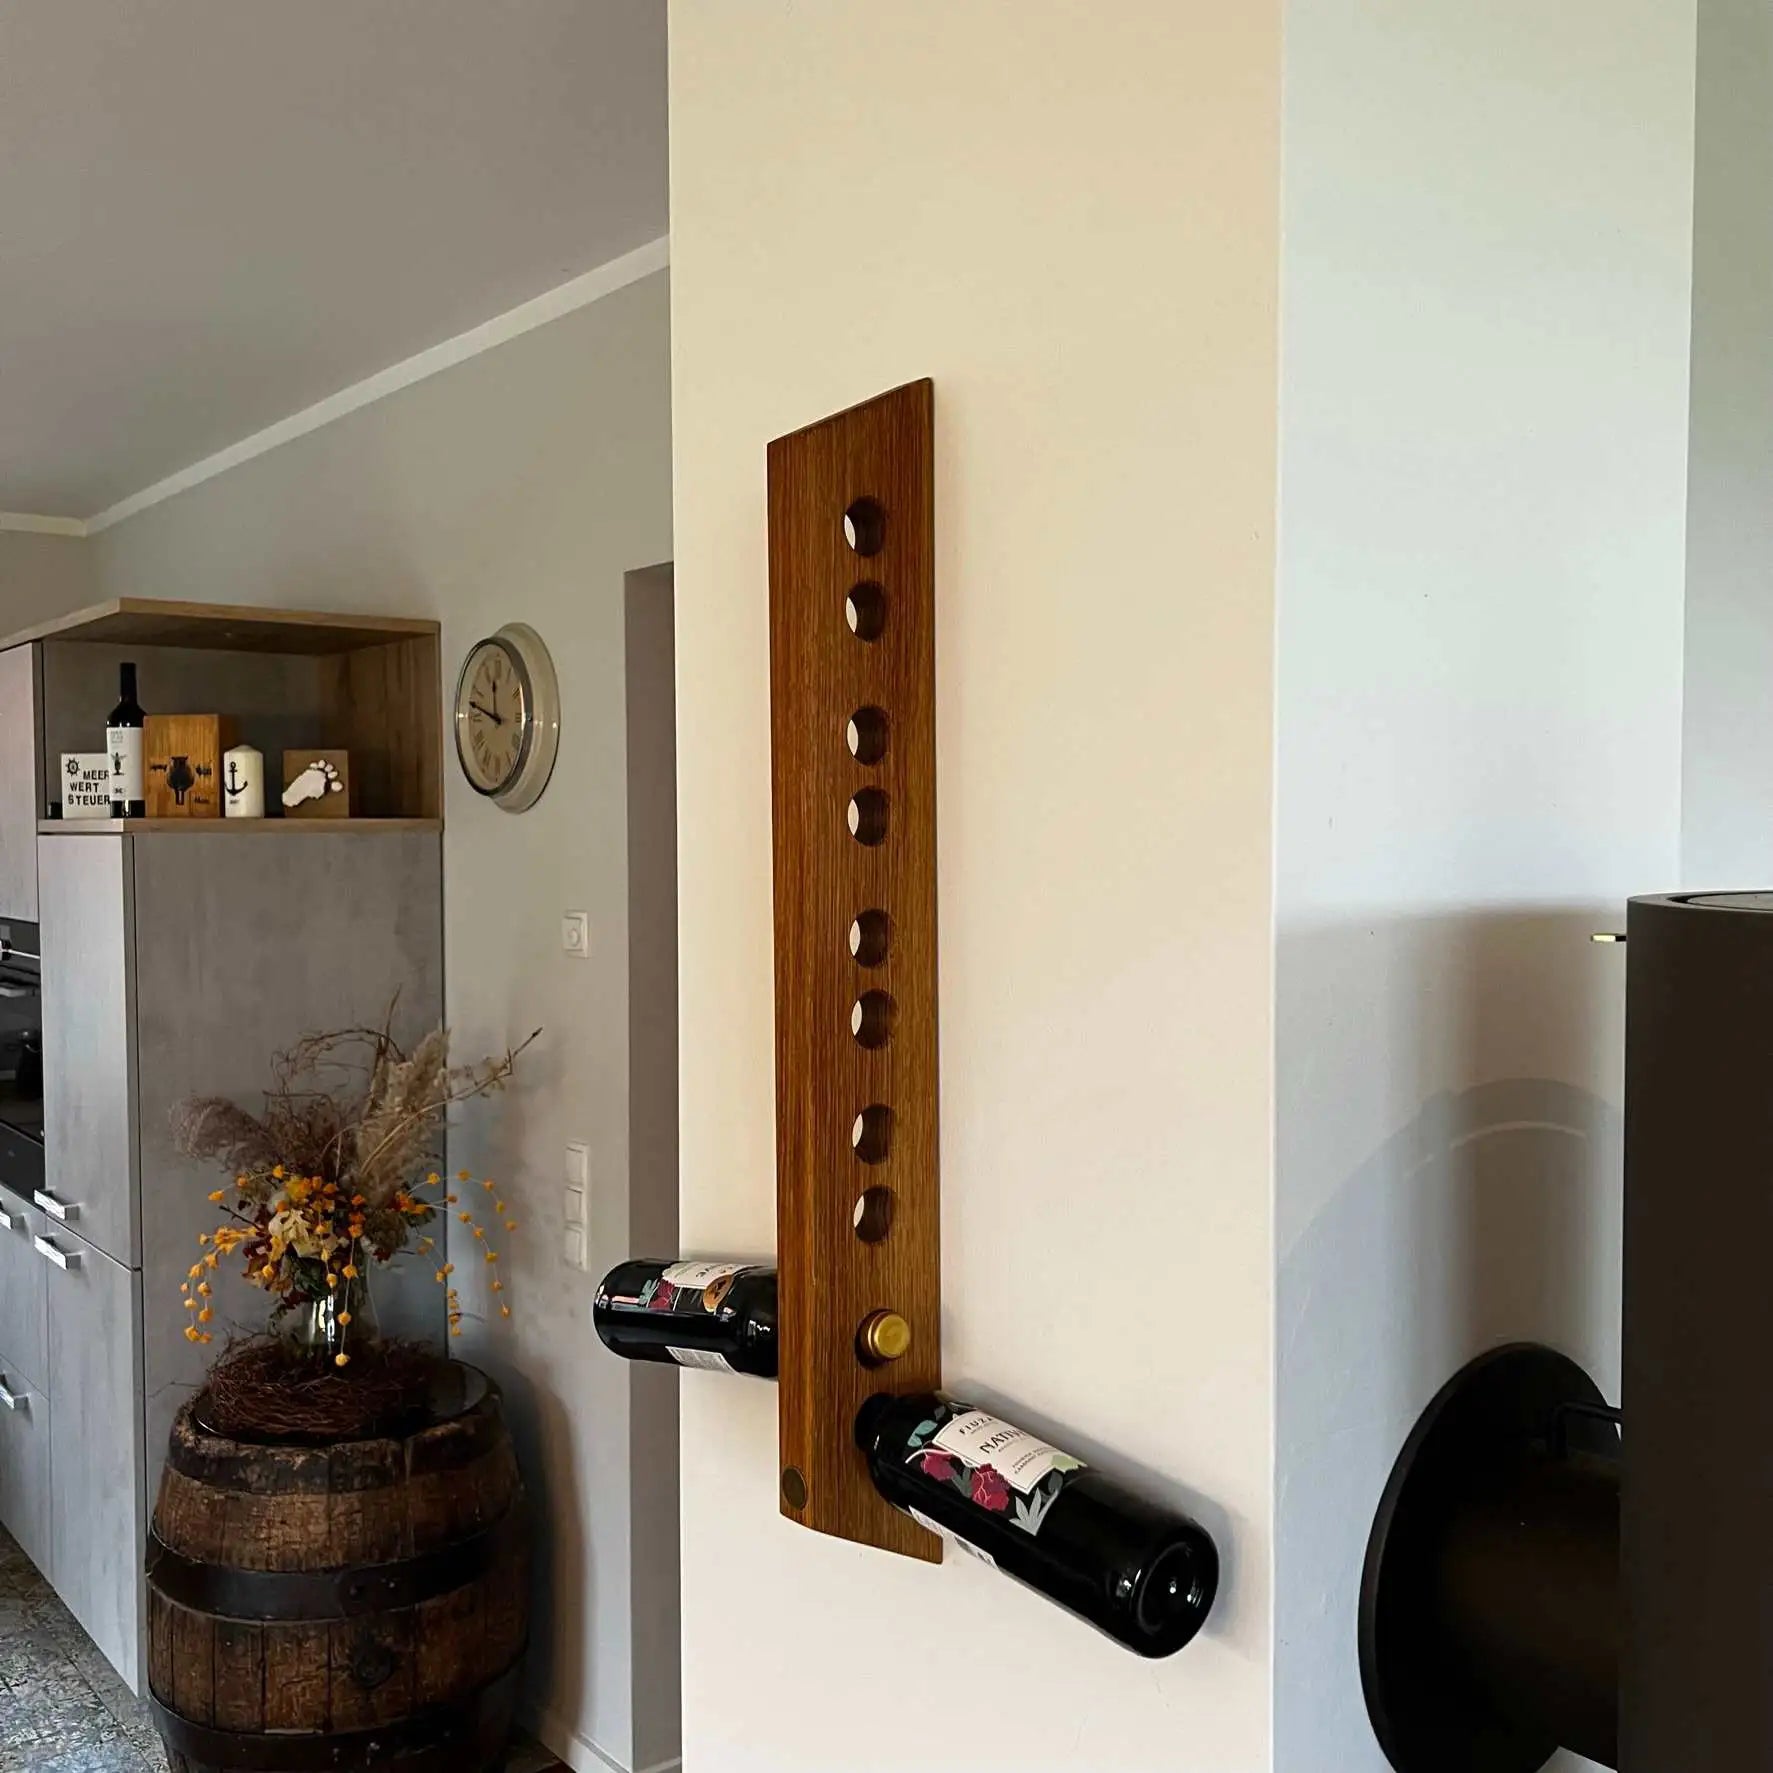 Weinregal aus massivem Holz: Stilvolle Aufbewahrung für deine Weinflaschen.